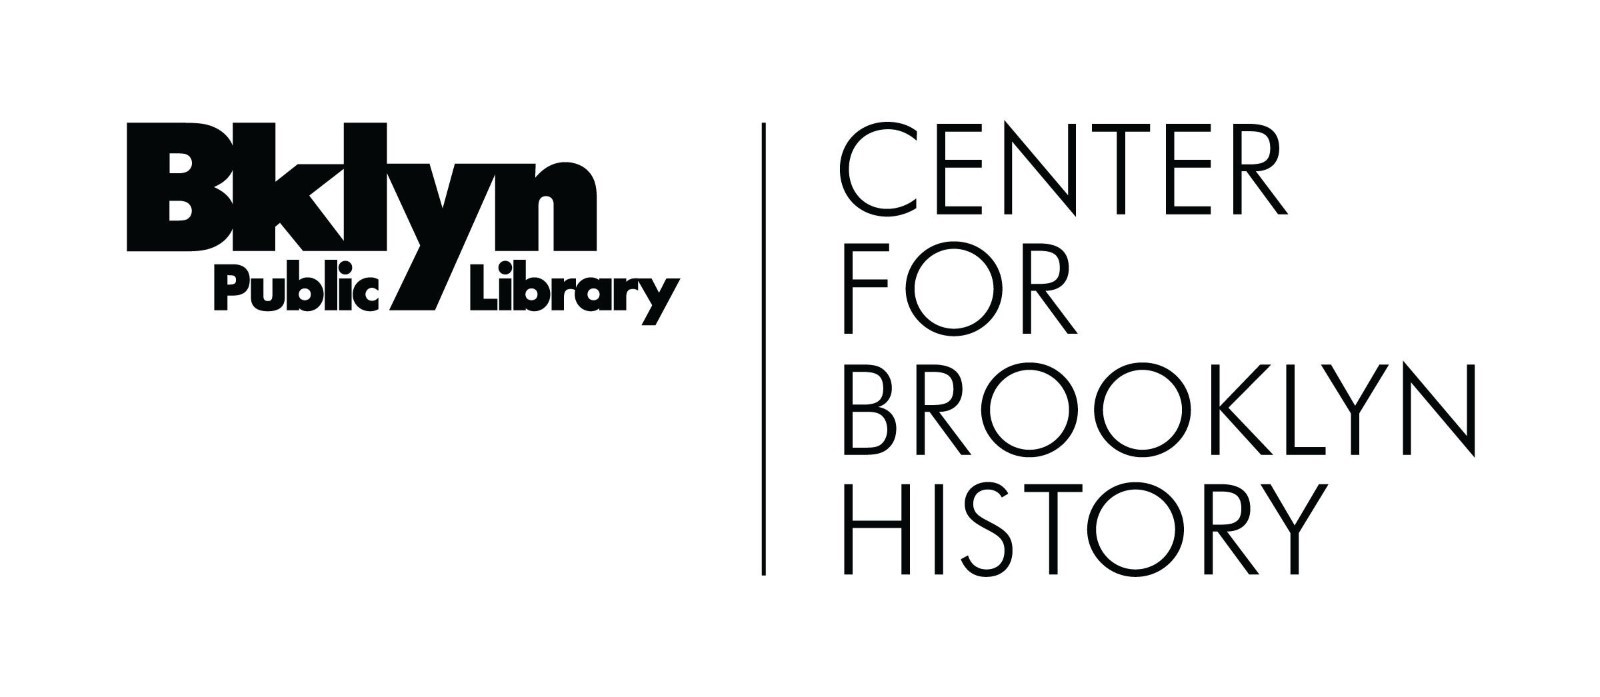 Bibliothèque publique de Brooklyn, Centre d'histoire de Brooklyn.